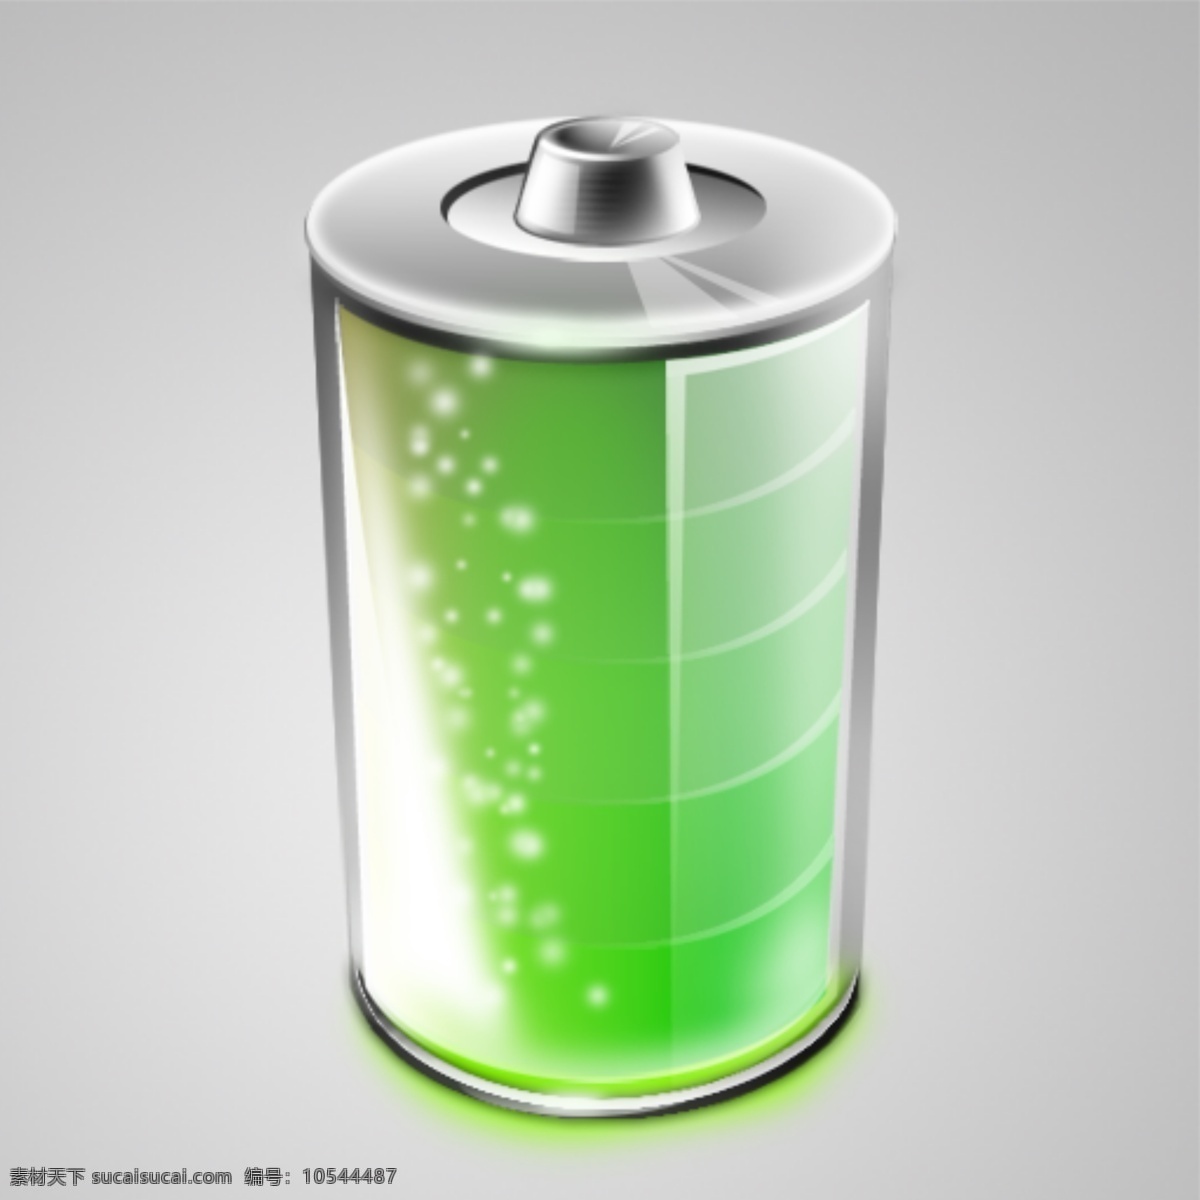 电源图标 电池图标 充电电源图标 充电电池图标 应用小图标 绿色电源图标 分层 灰色